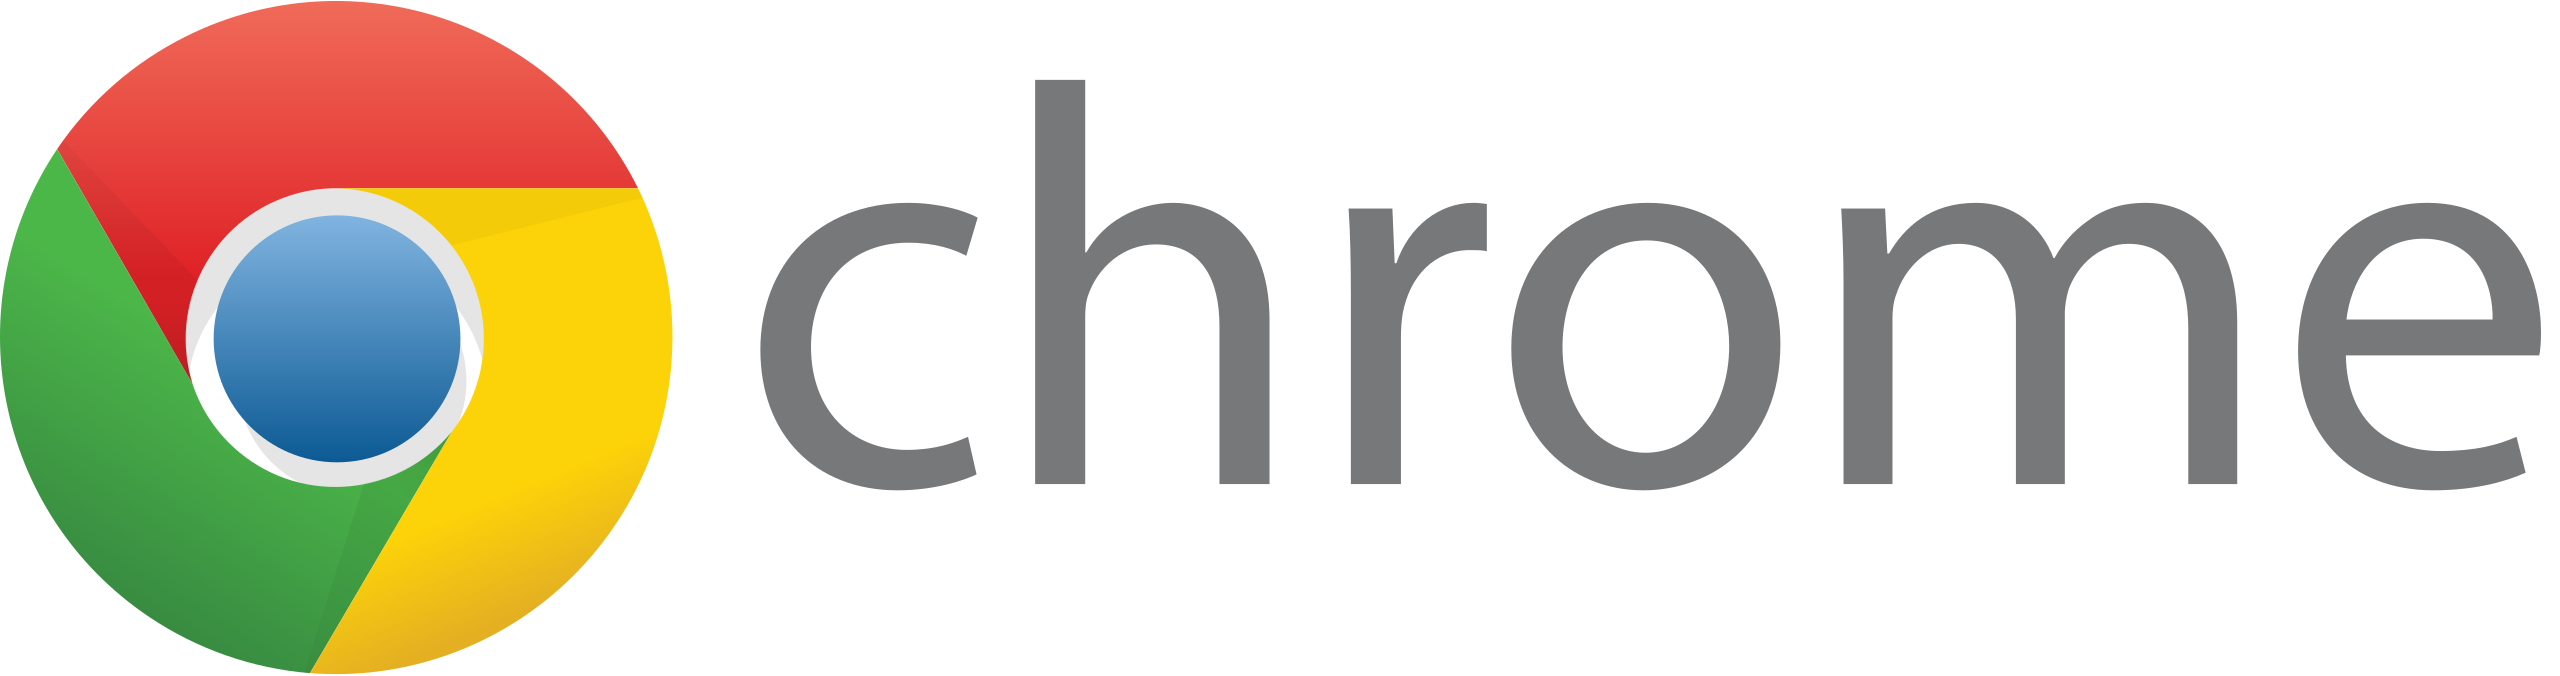 Google Chrome Logo Transparent Free PNG